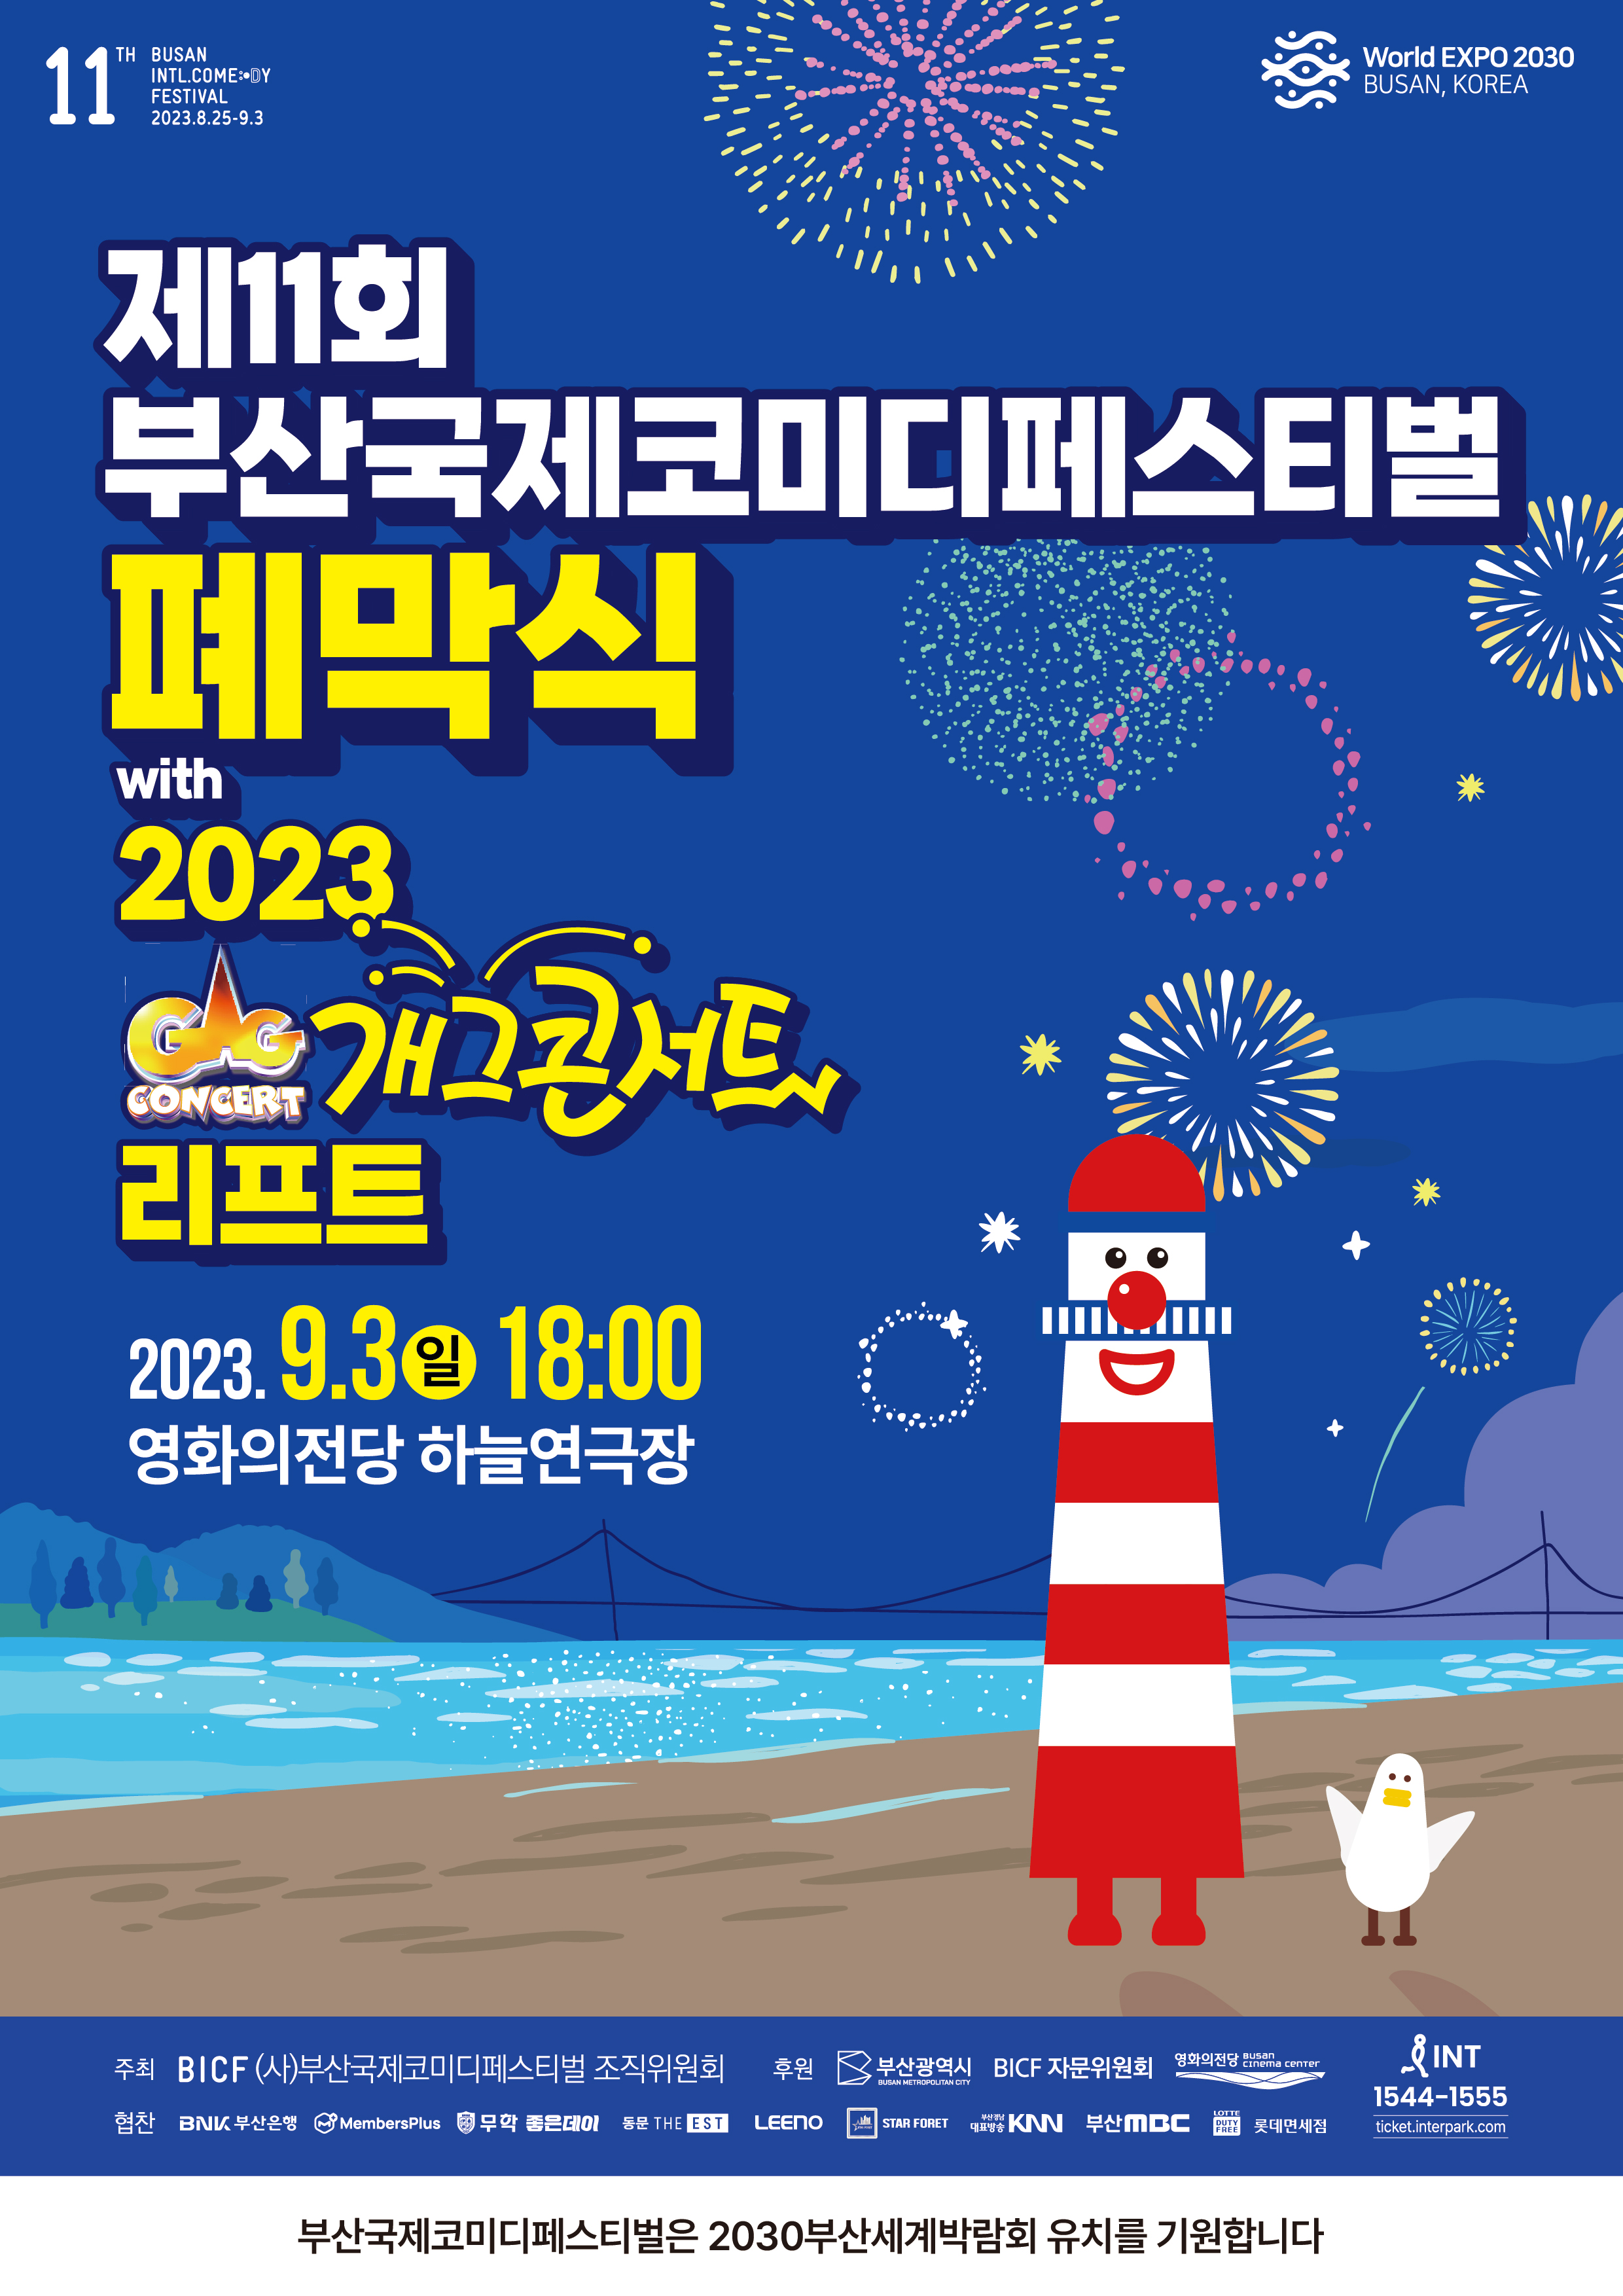 폐막식(with 2023 개그콘서트 리프트) & 코미디어워드